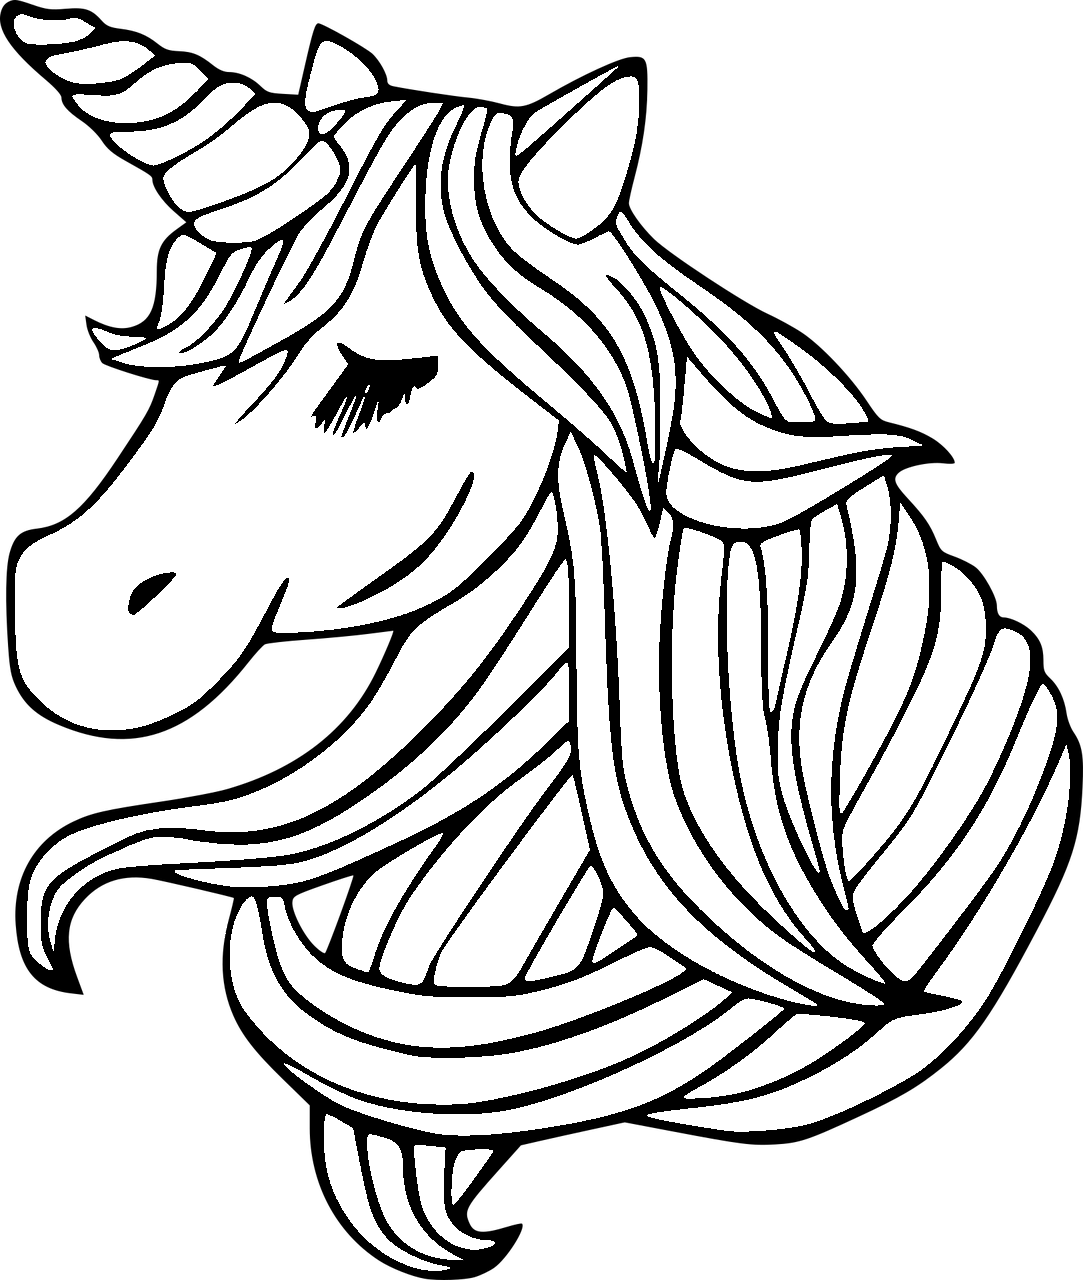 Disegno da colorare di testa di unicorno kawaii